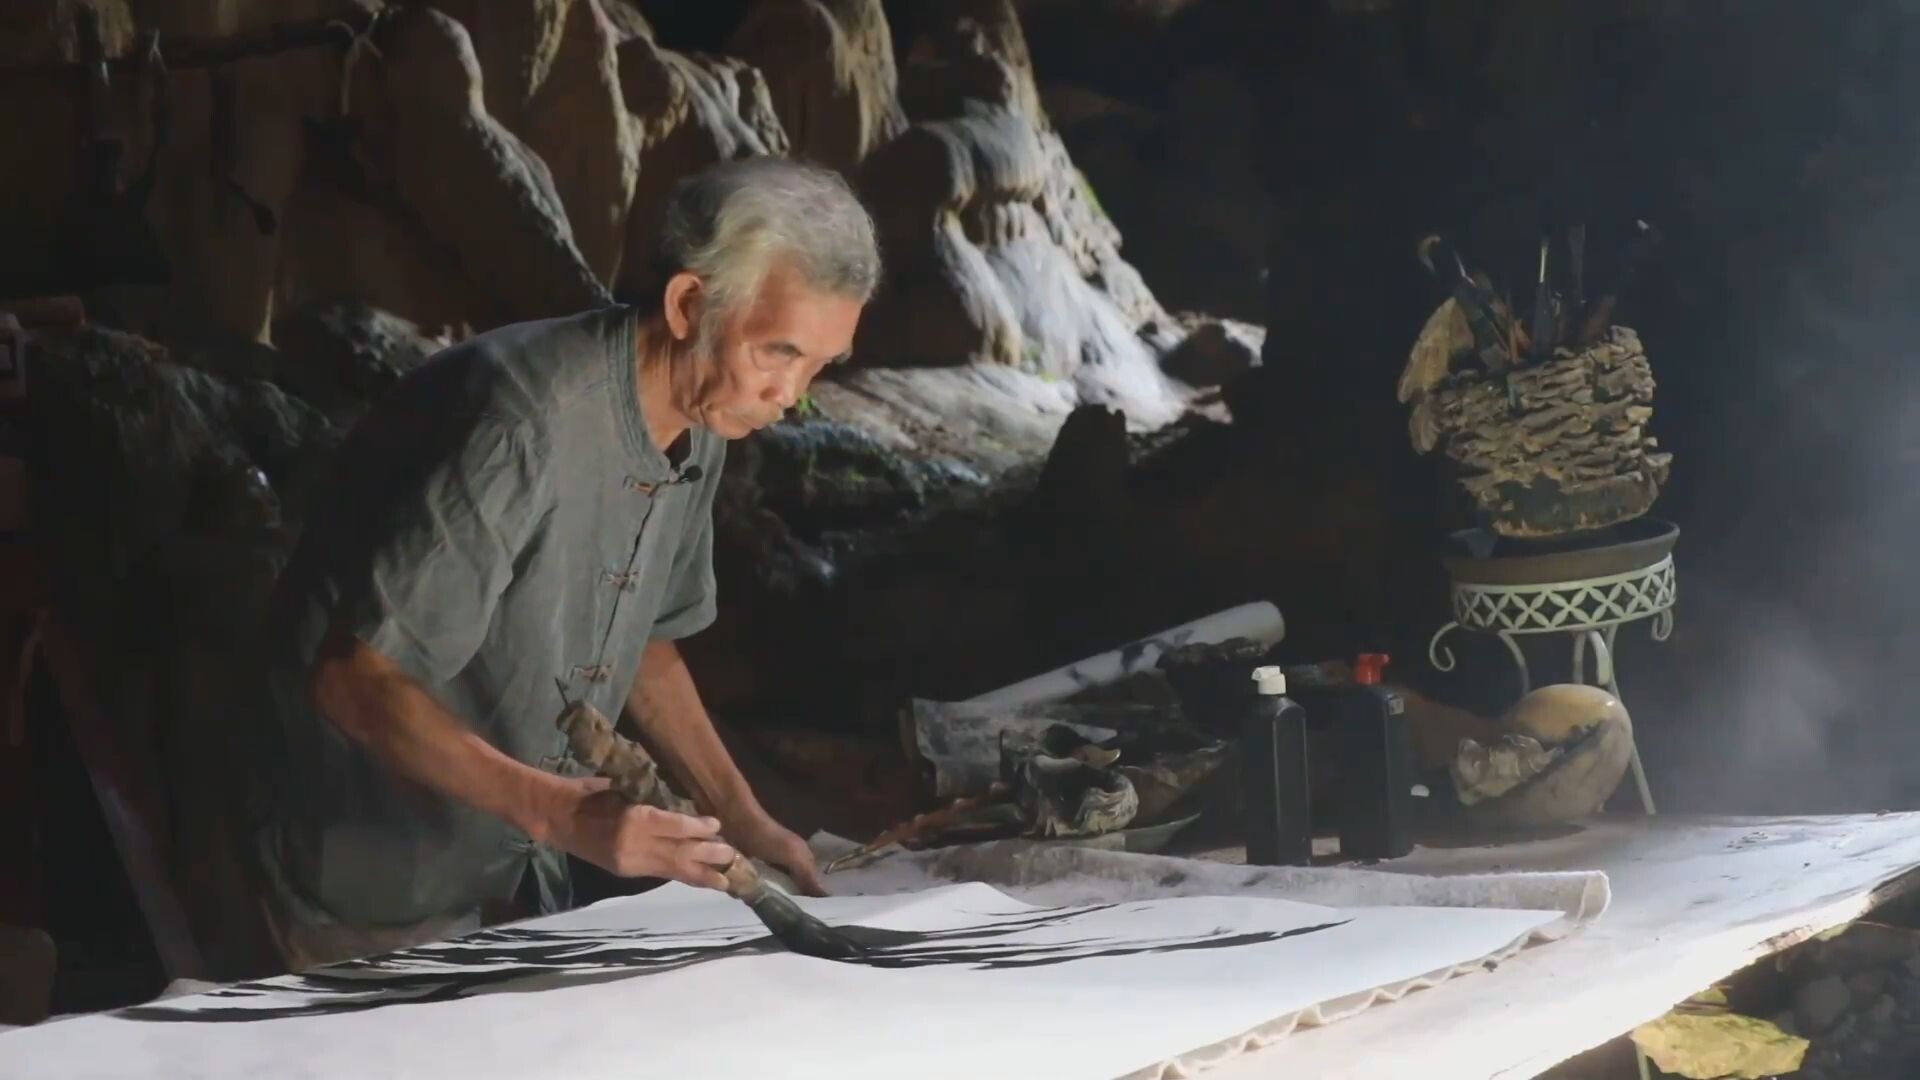 รู้จัก 'จิตรกรชรา' ในกุ้ยโจว ผู้รังสรรค์ 'งานศิลป์ในถ้ำ' กว่า 30 ปี